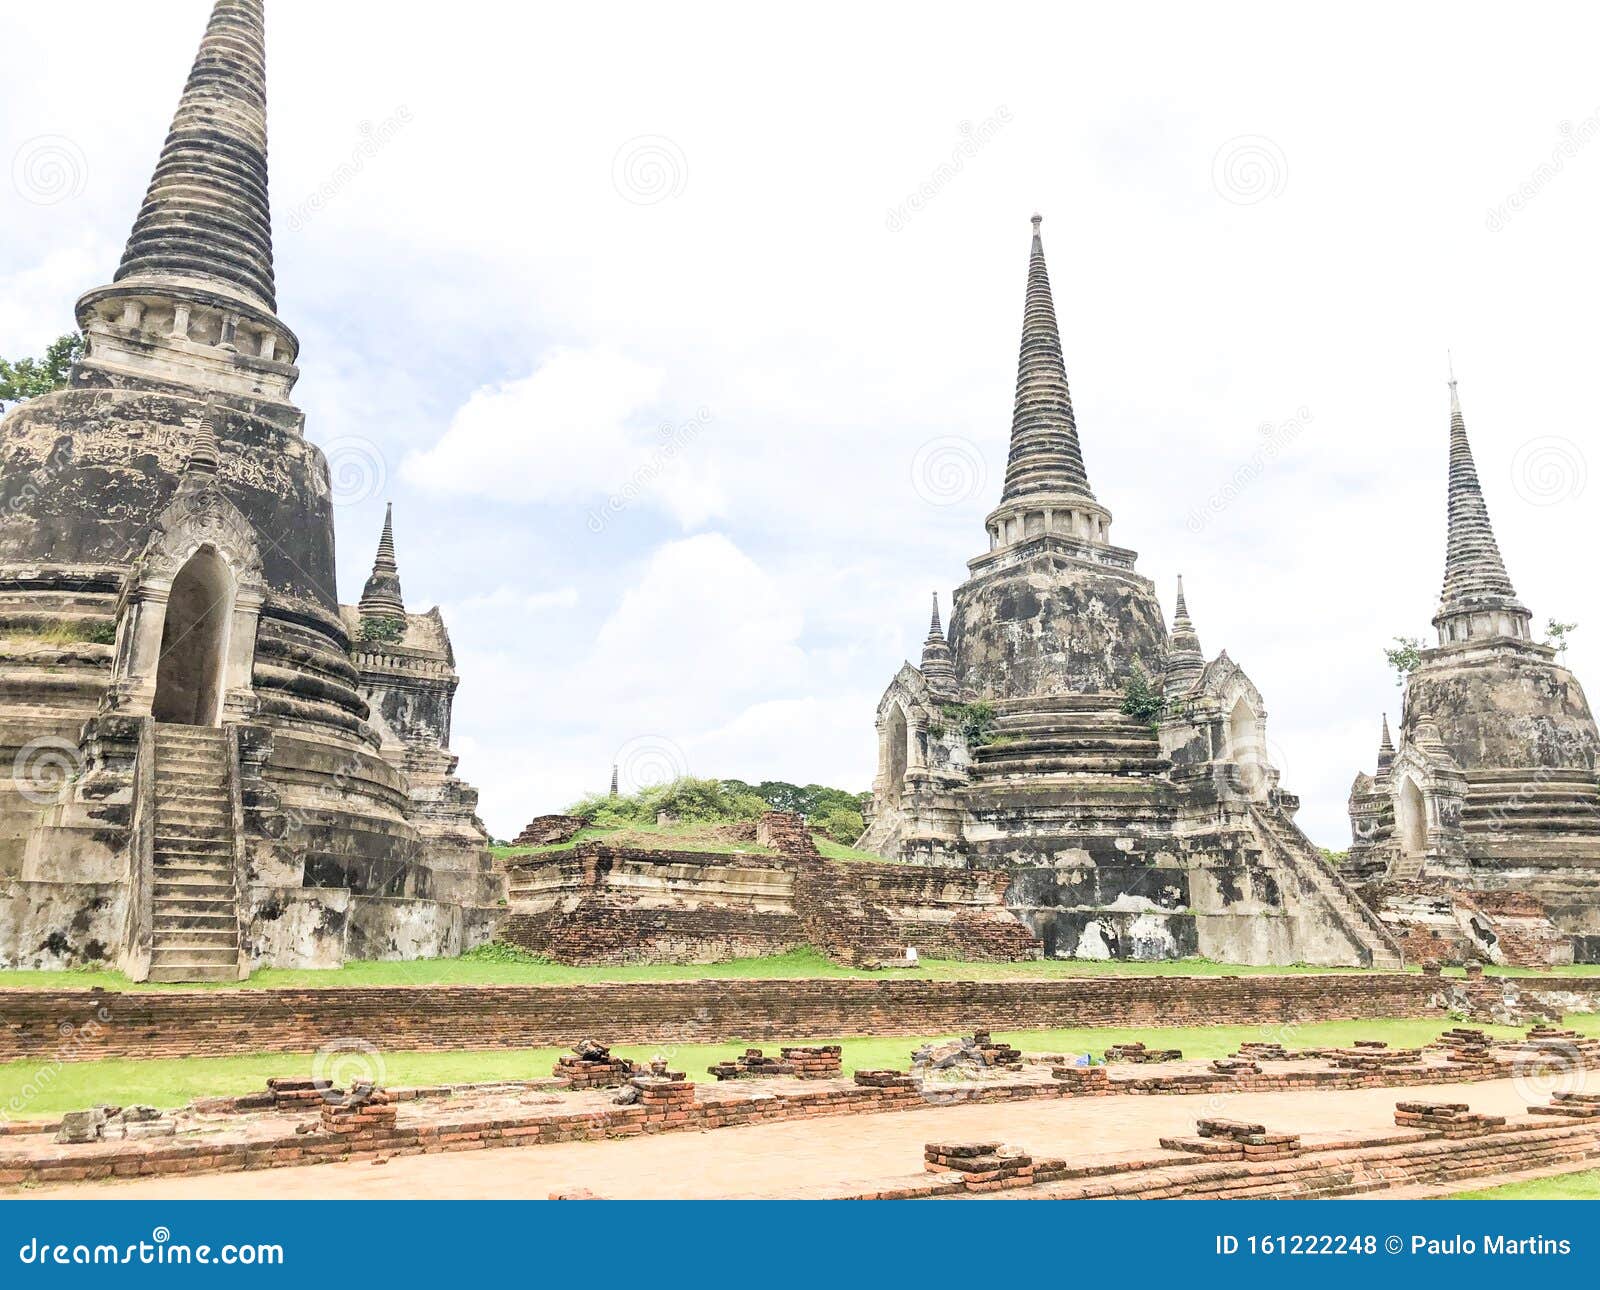 ayutthaya - unesco patrimony of humanity